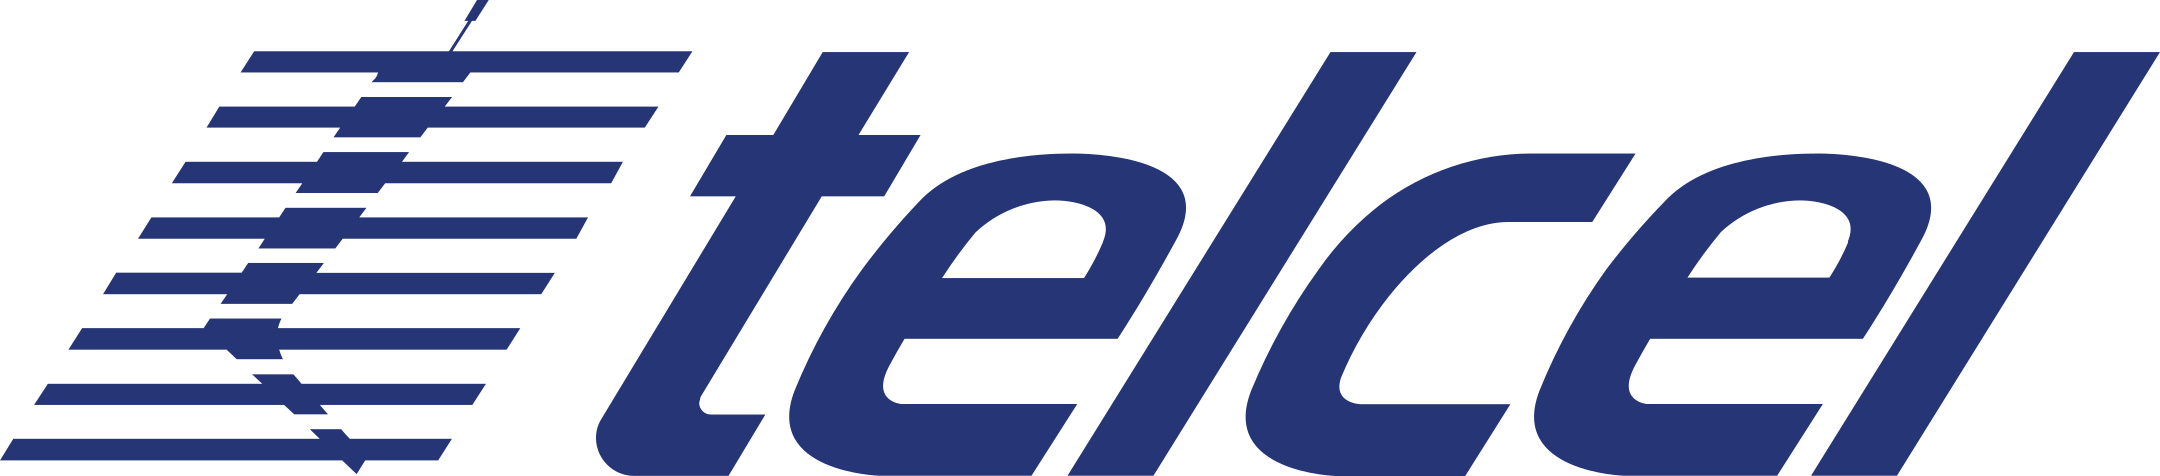 Telcel Logo.